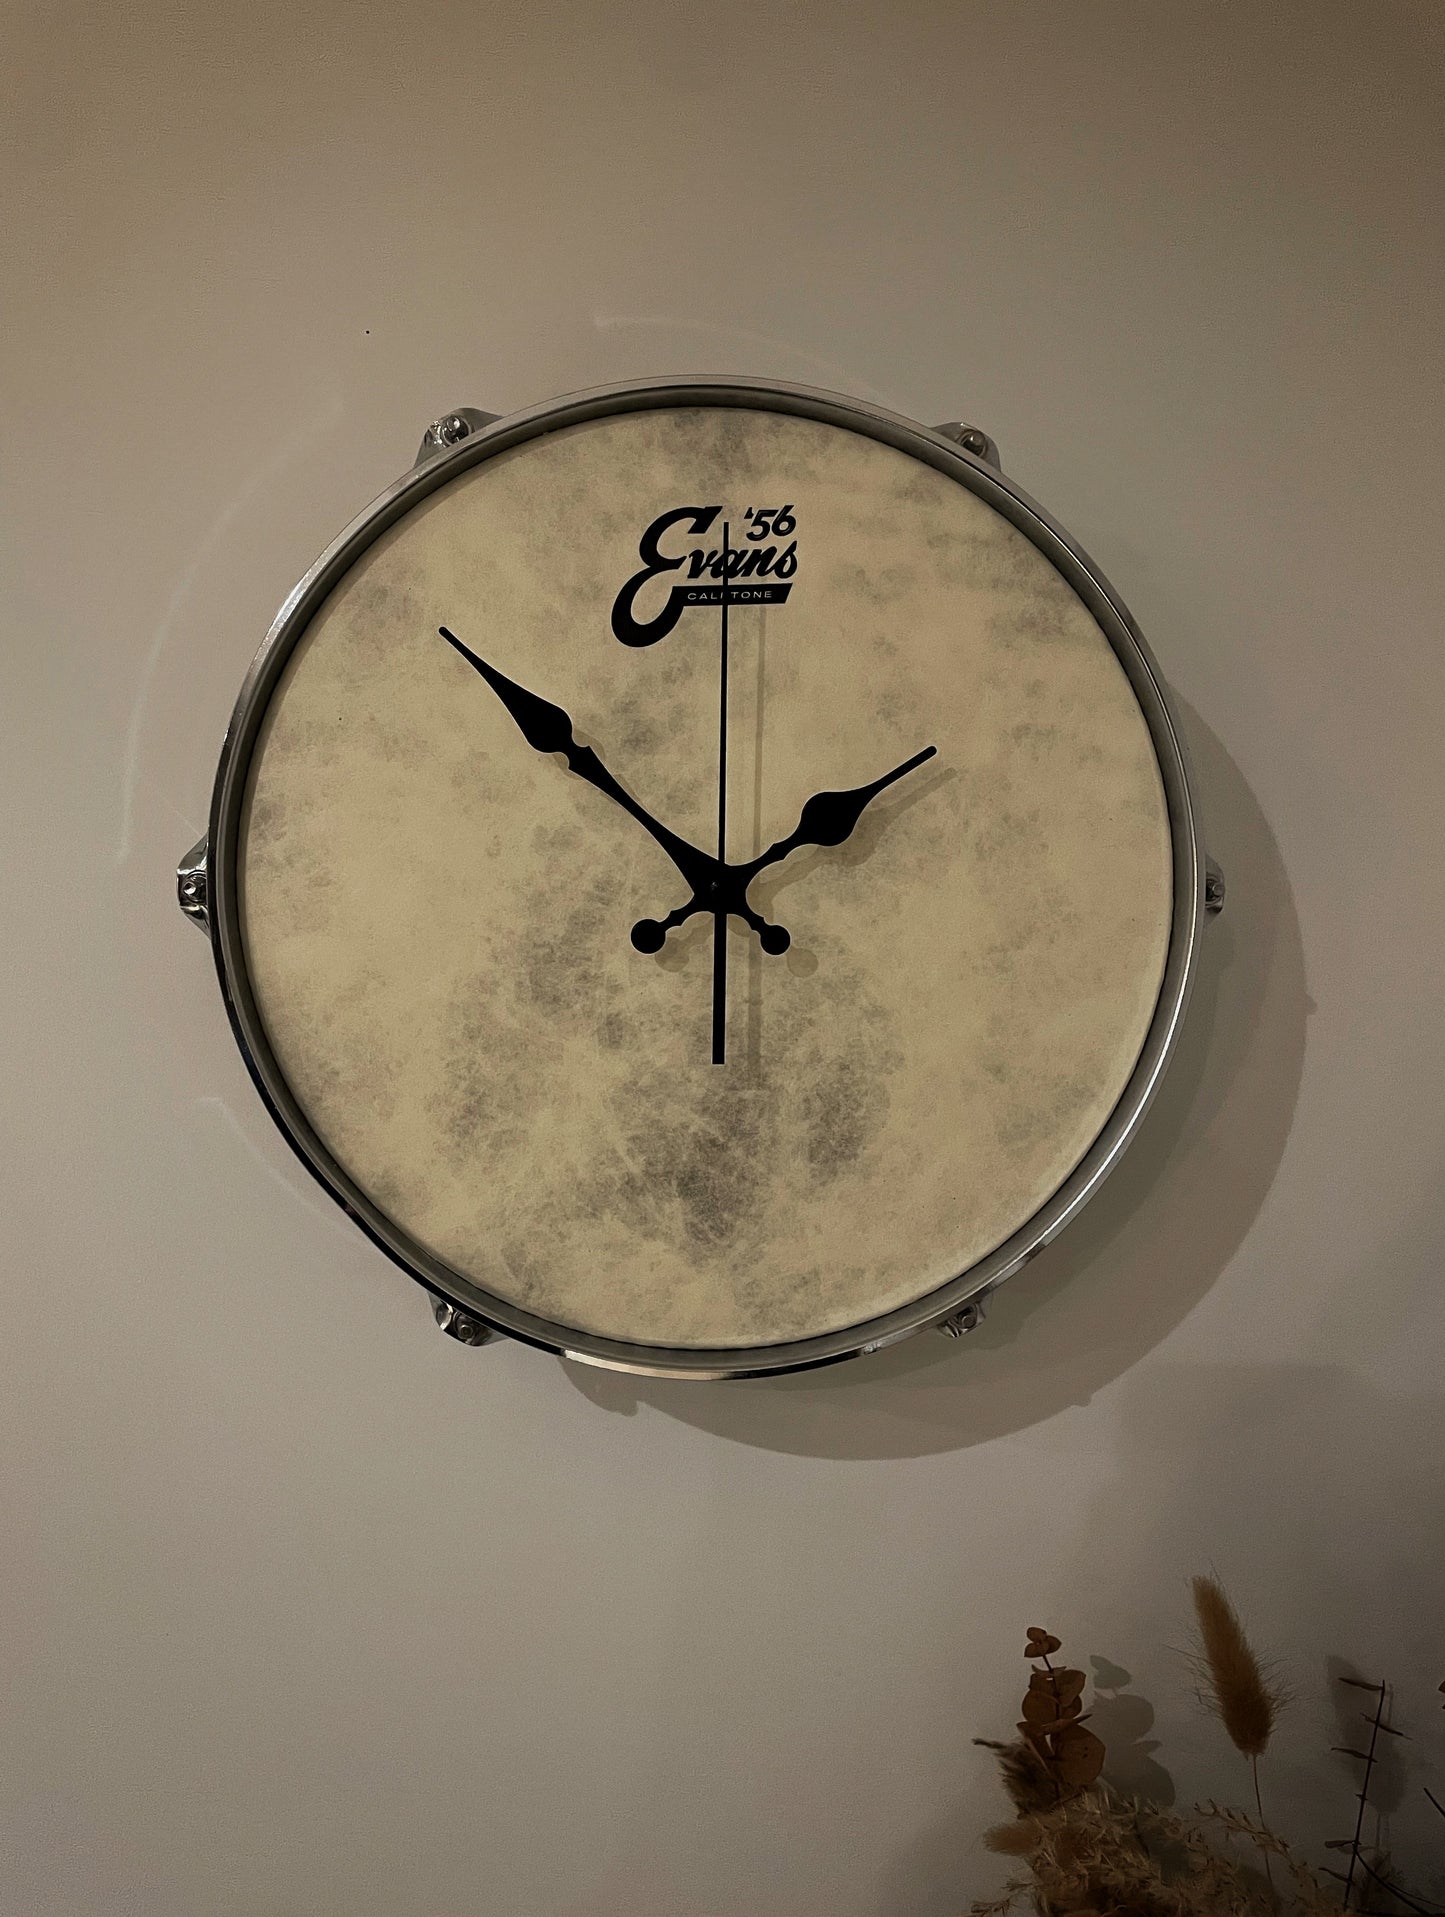 EVANS Drum Clock / Wall Mounted 12” Drum Clock / Rustic Brown / Upcycled Drum